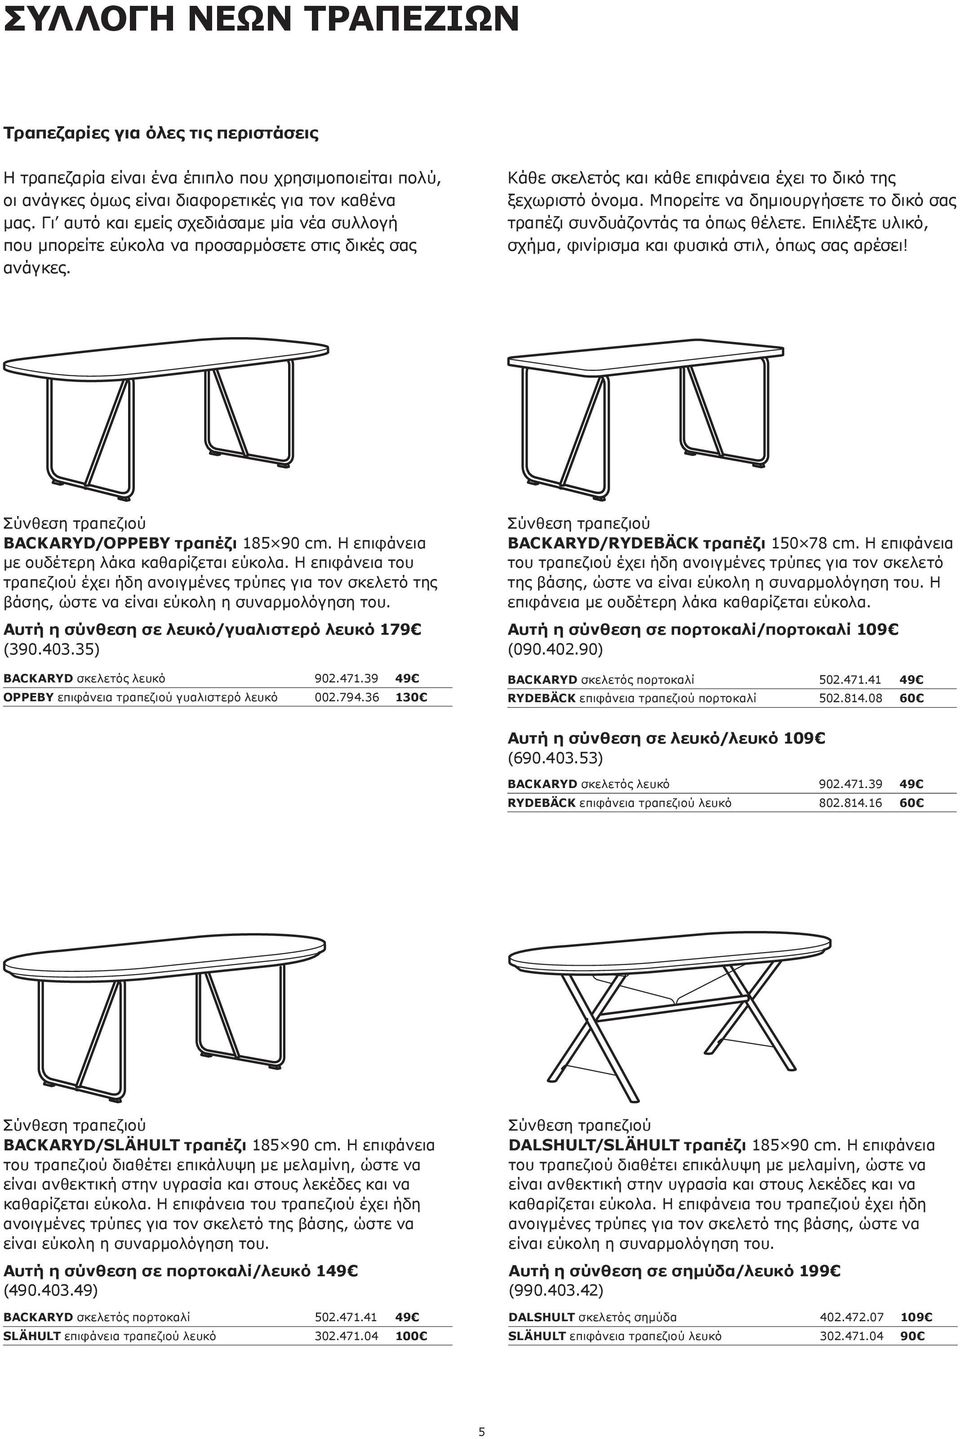 Μπορείτε να δημιουργήσετε το δικό σας τραπέζι συνδυάζοντάς τα όπως θέλετε. Επιλέξτε υλικό, σχήμα, φινίρισμα και φυσικά στιλ, όπως σας αρέσει! BACKARYD/OPPEBY τραπέζι 185 90 cm.